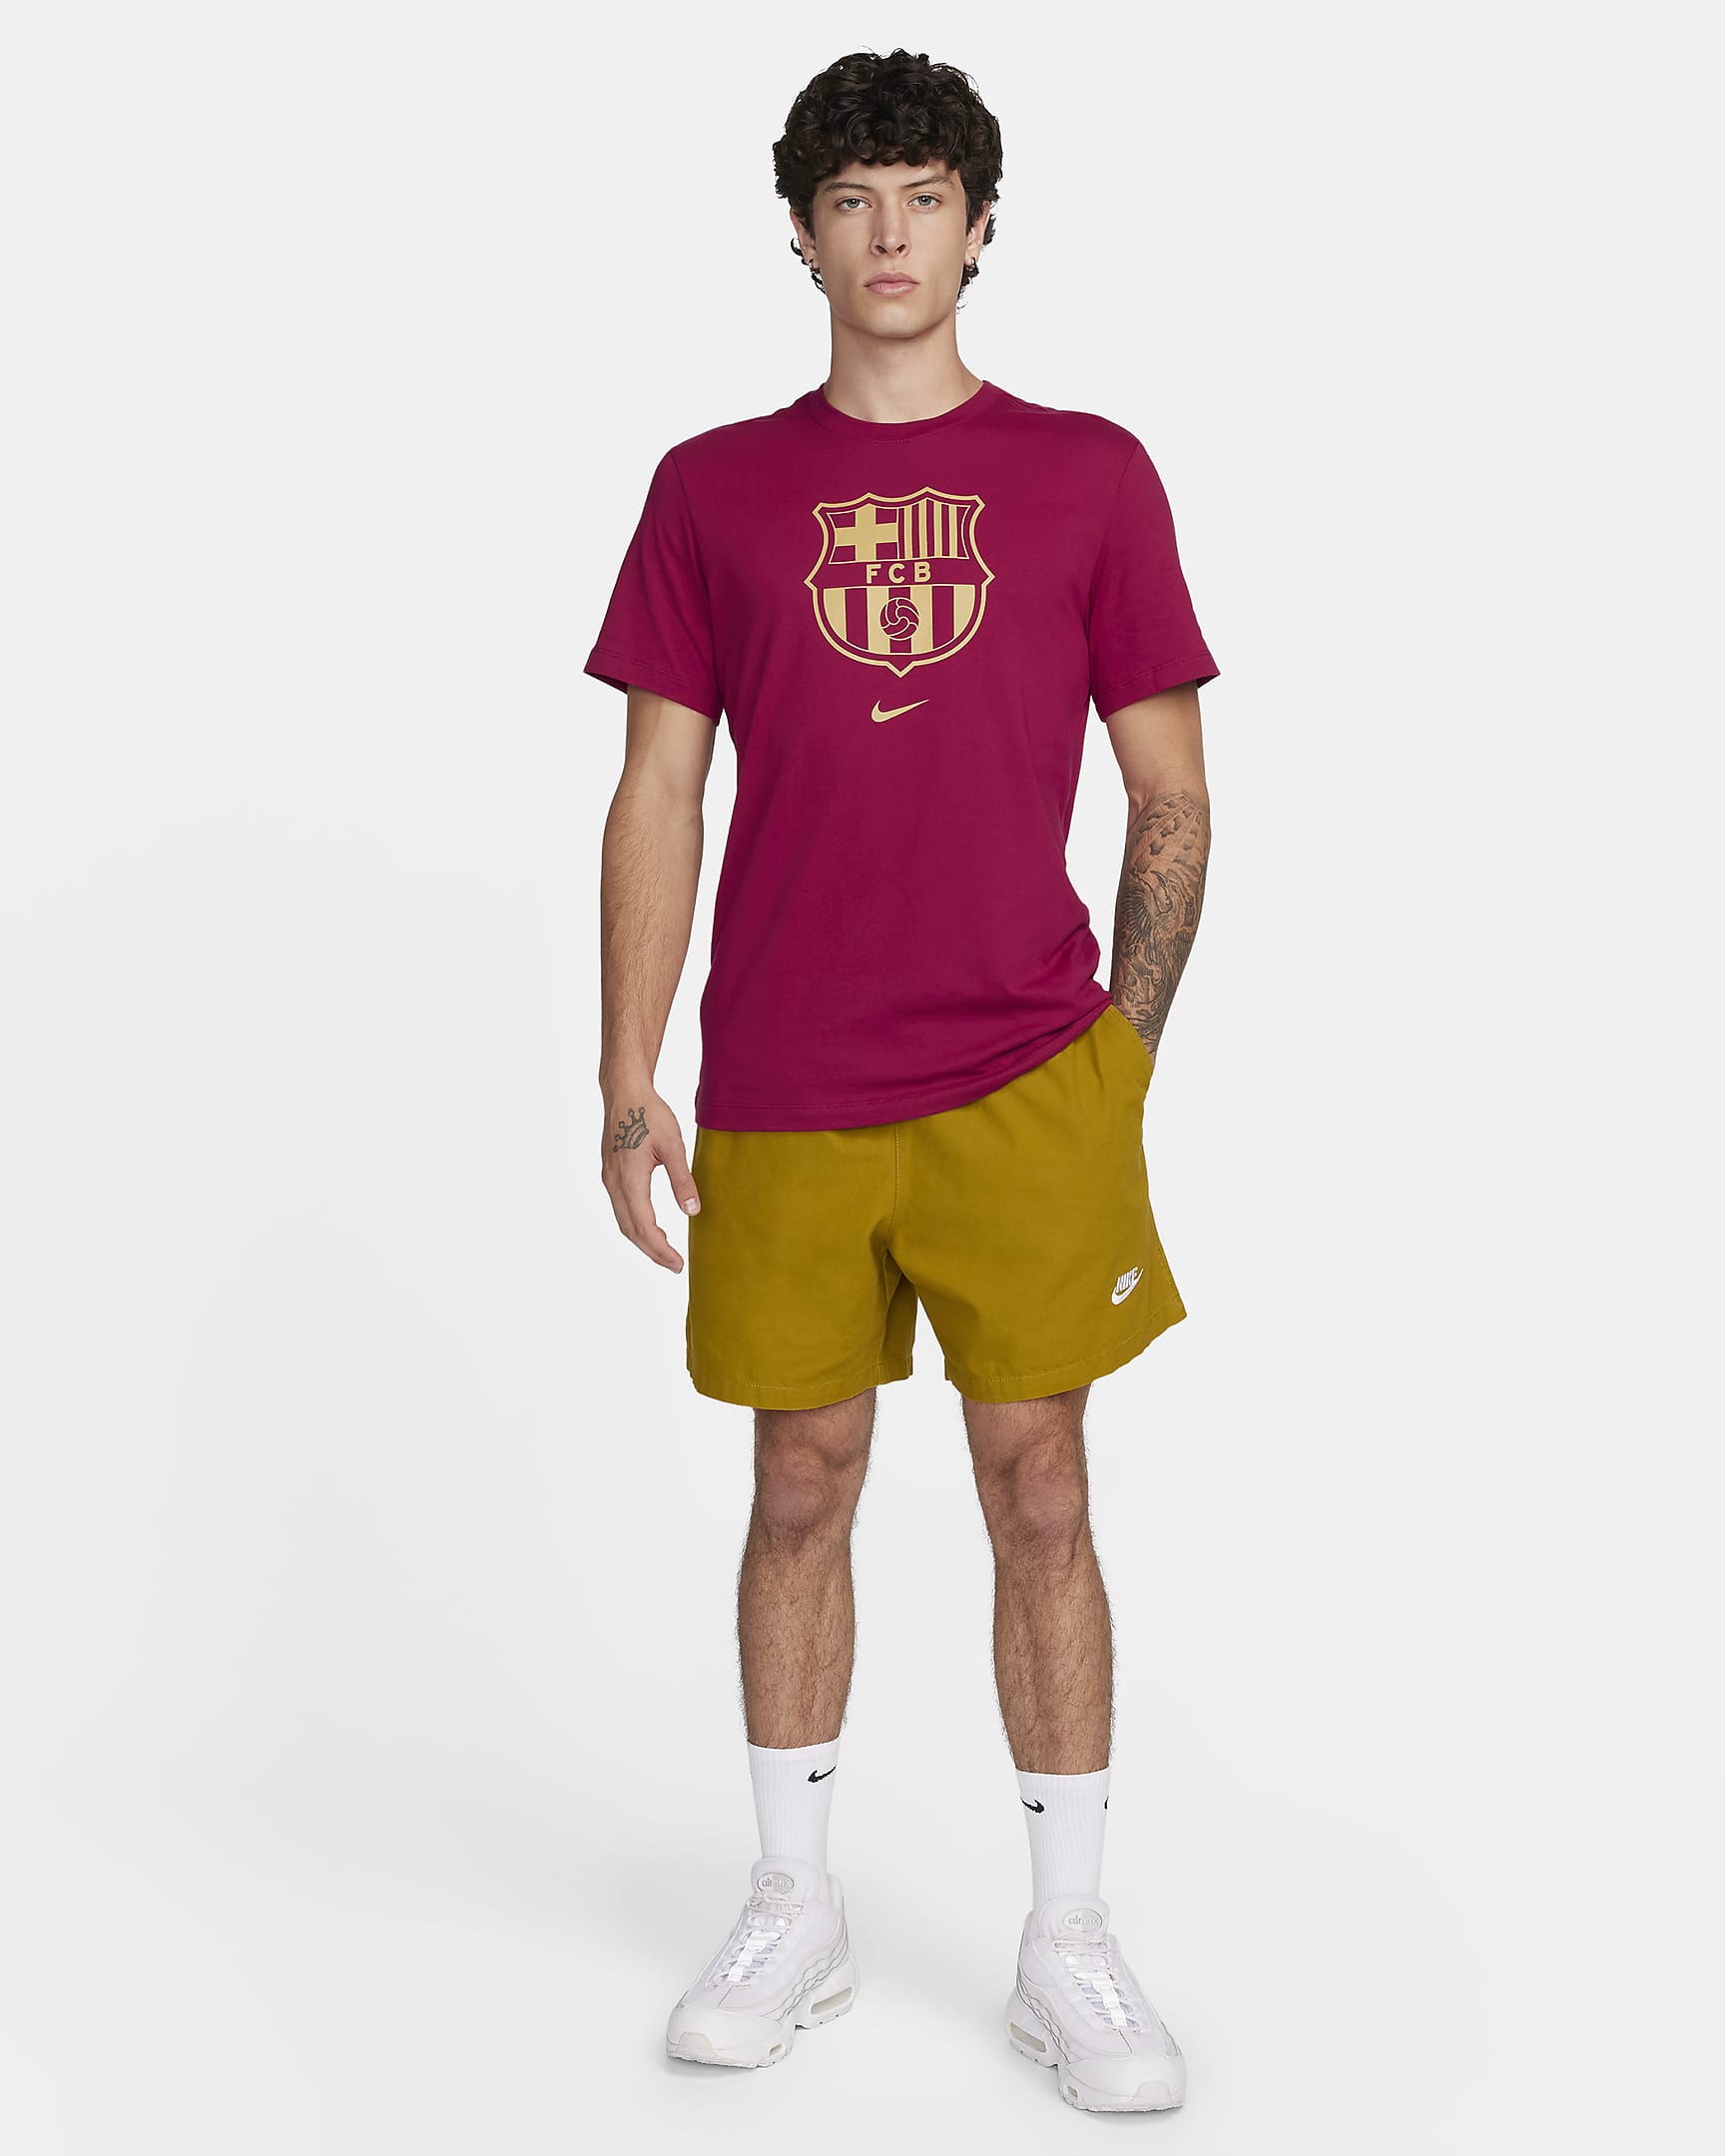 F.C. Barcelona Crest Men's Football T-Shirt. Nike PT